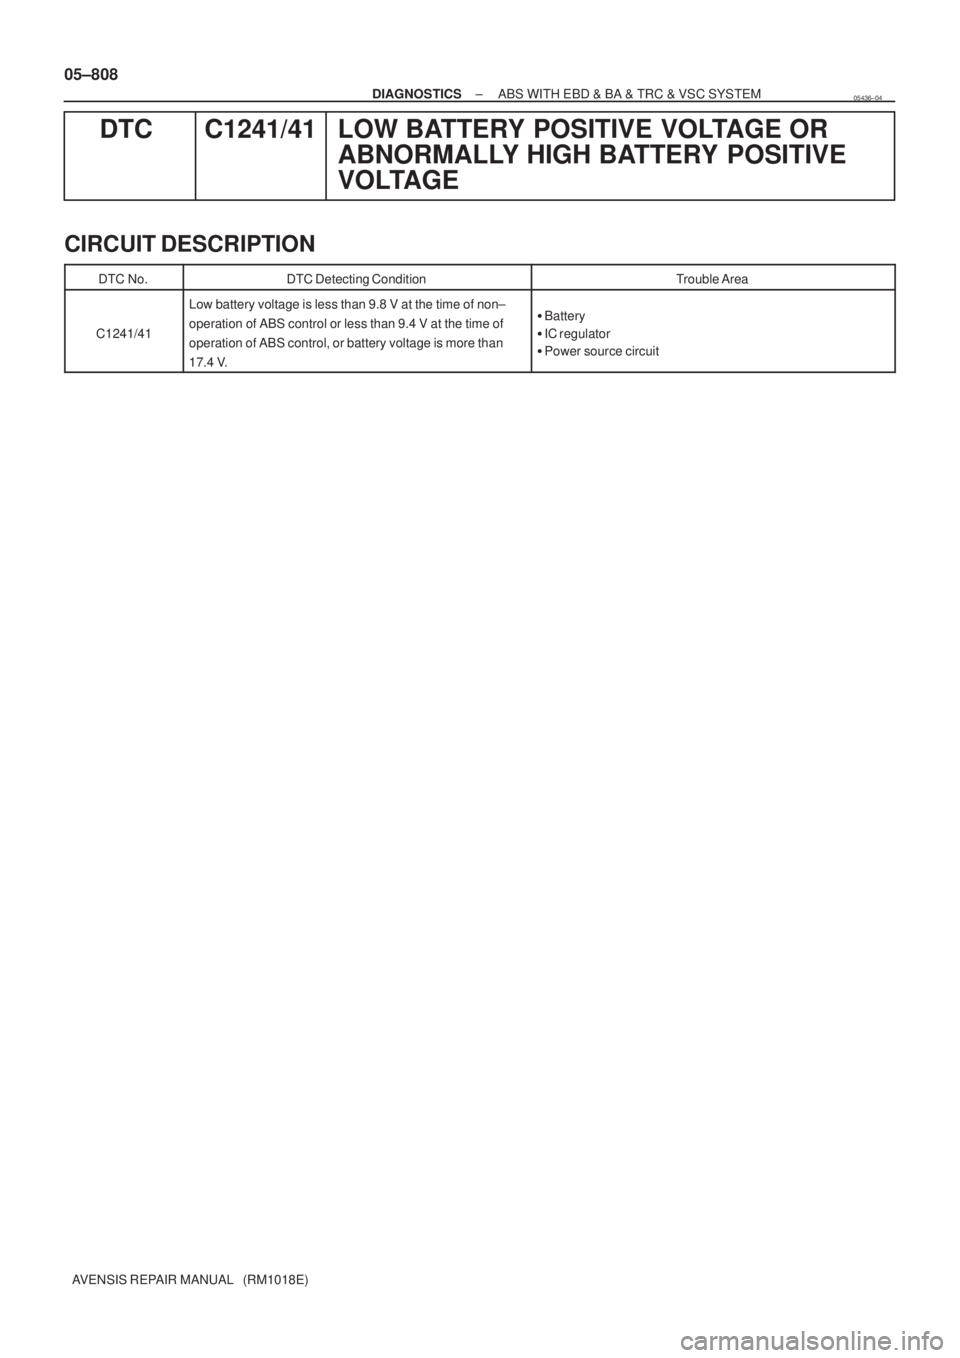 TOYOTA AVENSIS 2005  Service Repair Manual 05±808
± DIAGNOSTICSABS WITH EBD & BA & TRC & VSC SYSTEM
AVENSIS REPAIR MANUAL   (RM1018E)
DTC C1241/41 LOW BATTERY POSITIVE VOLTAGE OR
ABNORMALLY HIGH BATTERY  POSITIVE
VOLTAGE
CIRCUIT DESCRIPTION
